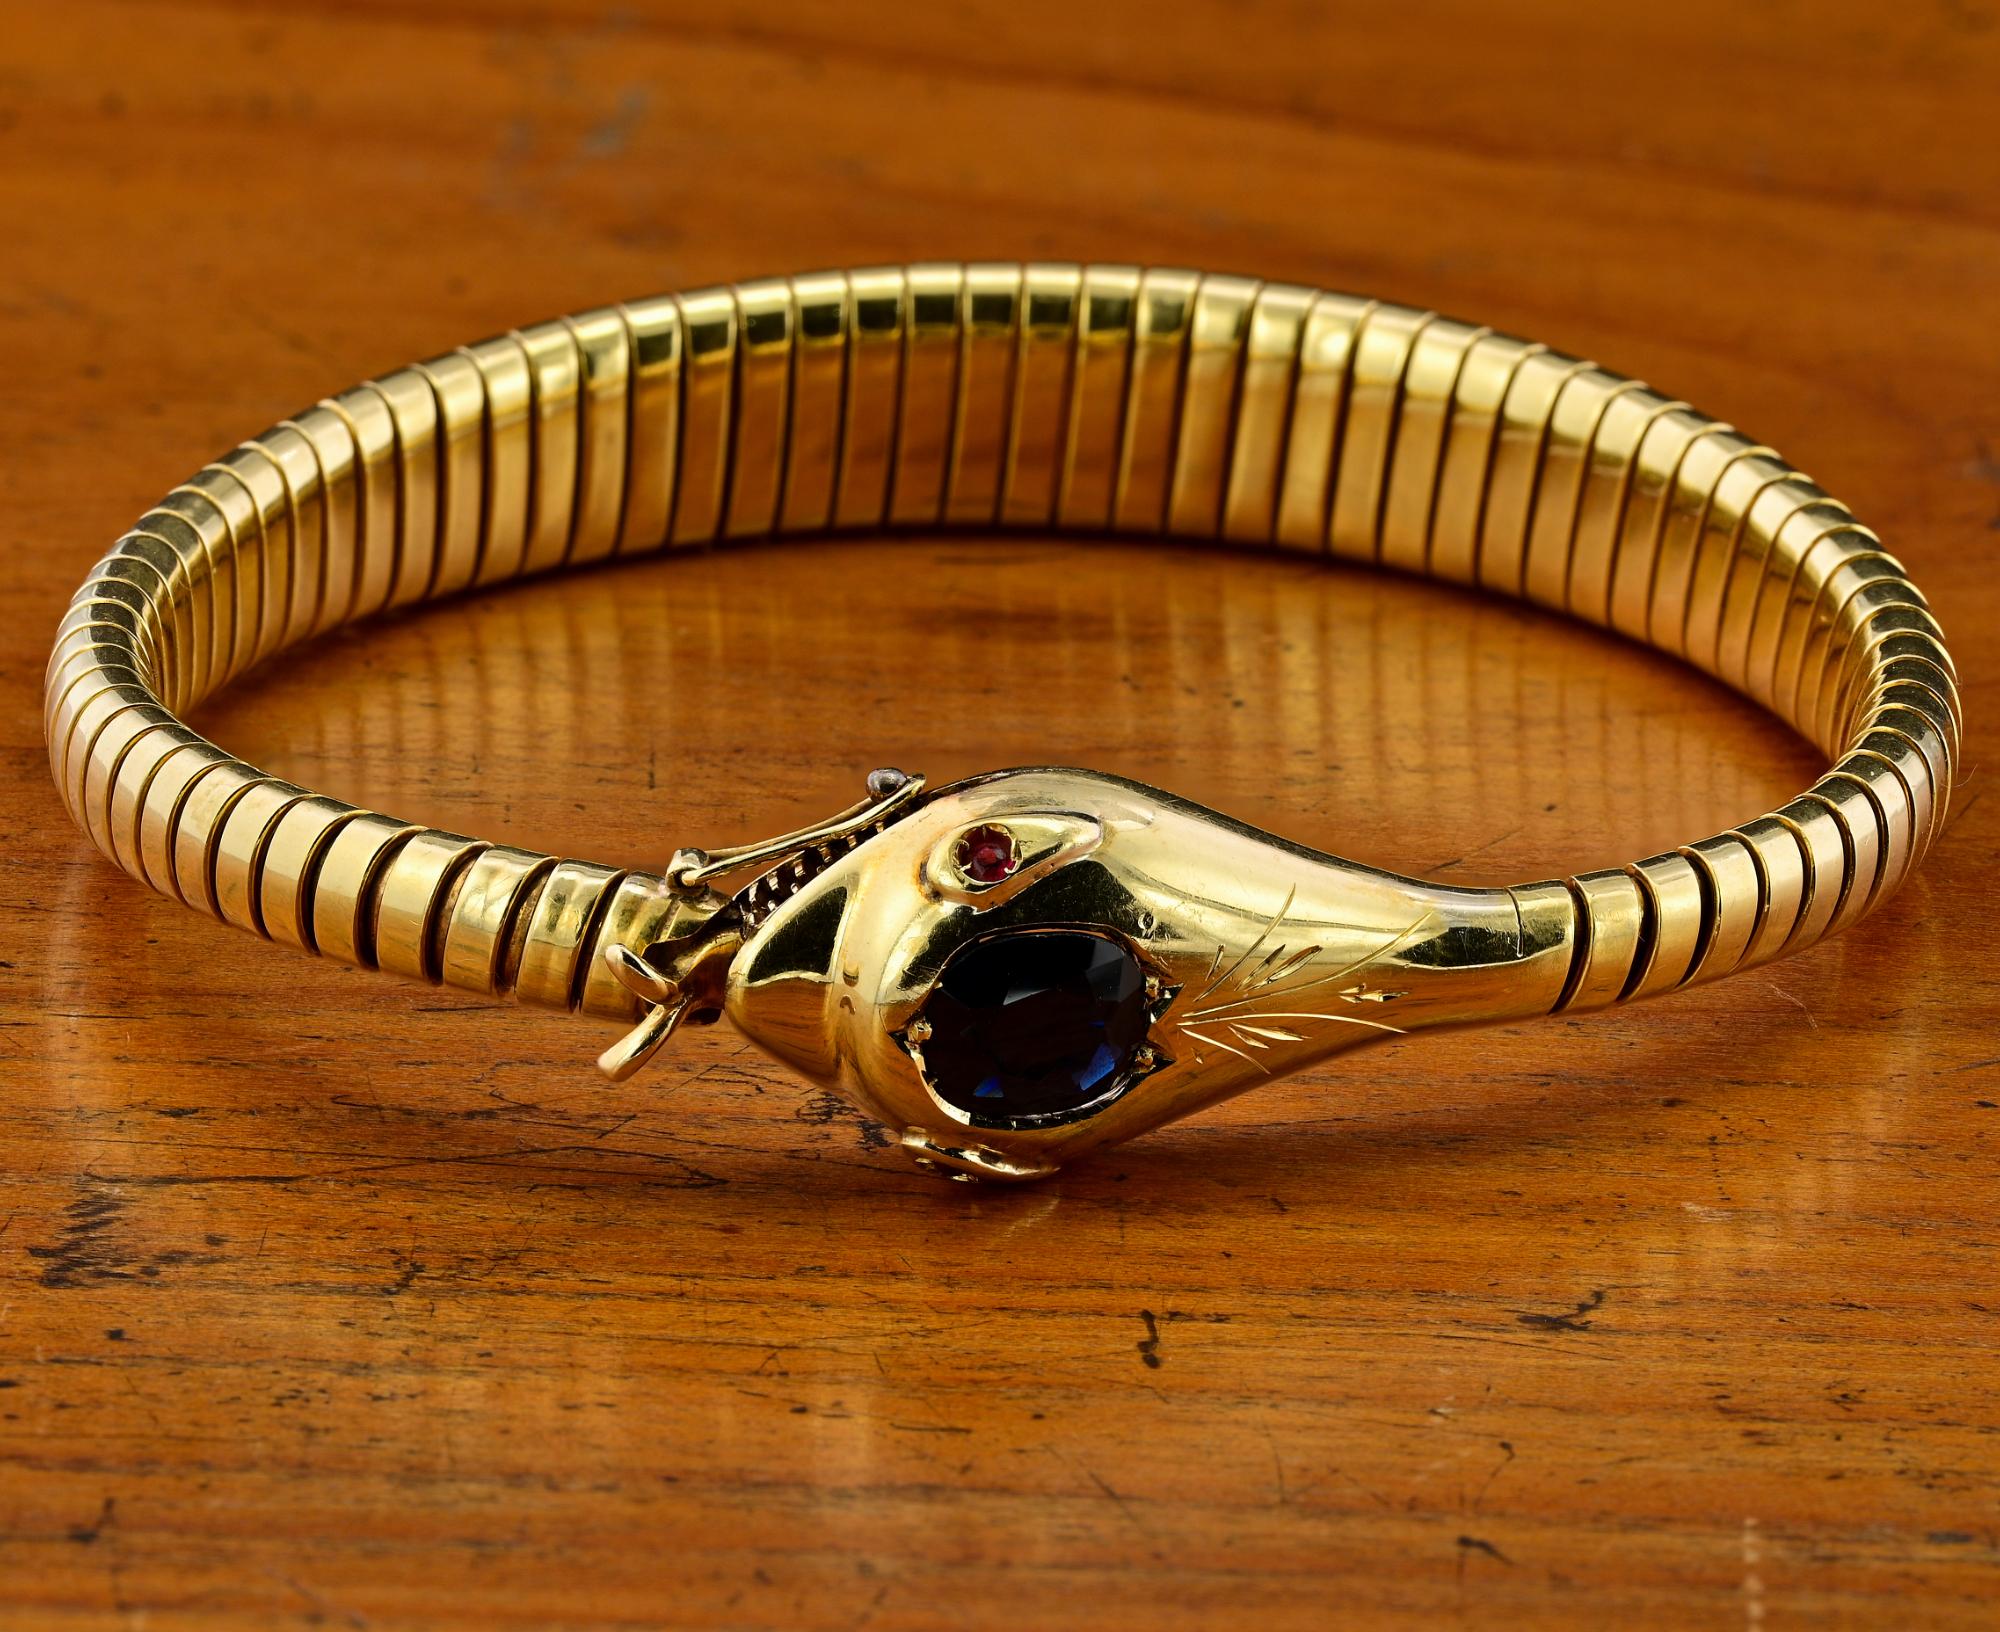 Dieses faszinierende Schlangenarmband ist um 1920
Handgefertigt aus massivem 18 KT Gold, italienischer Herkunft
Traditionelle Tubogas-Arbeit, die mit einem Schlangenkopf endet - wiegt 23,3 Gramm
Der Kopf der Schlange ist mit einem wunderschönen,